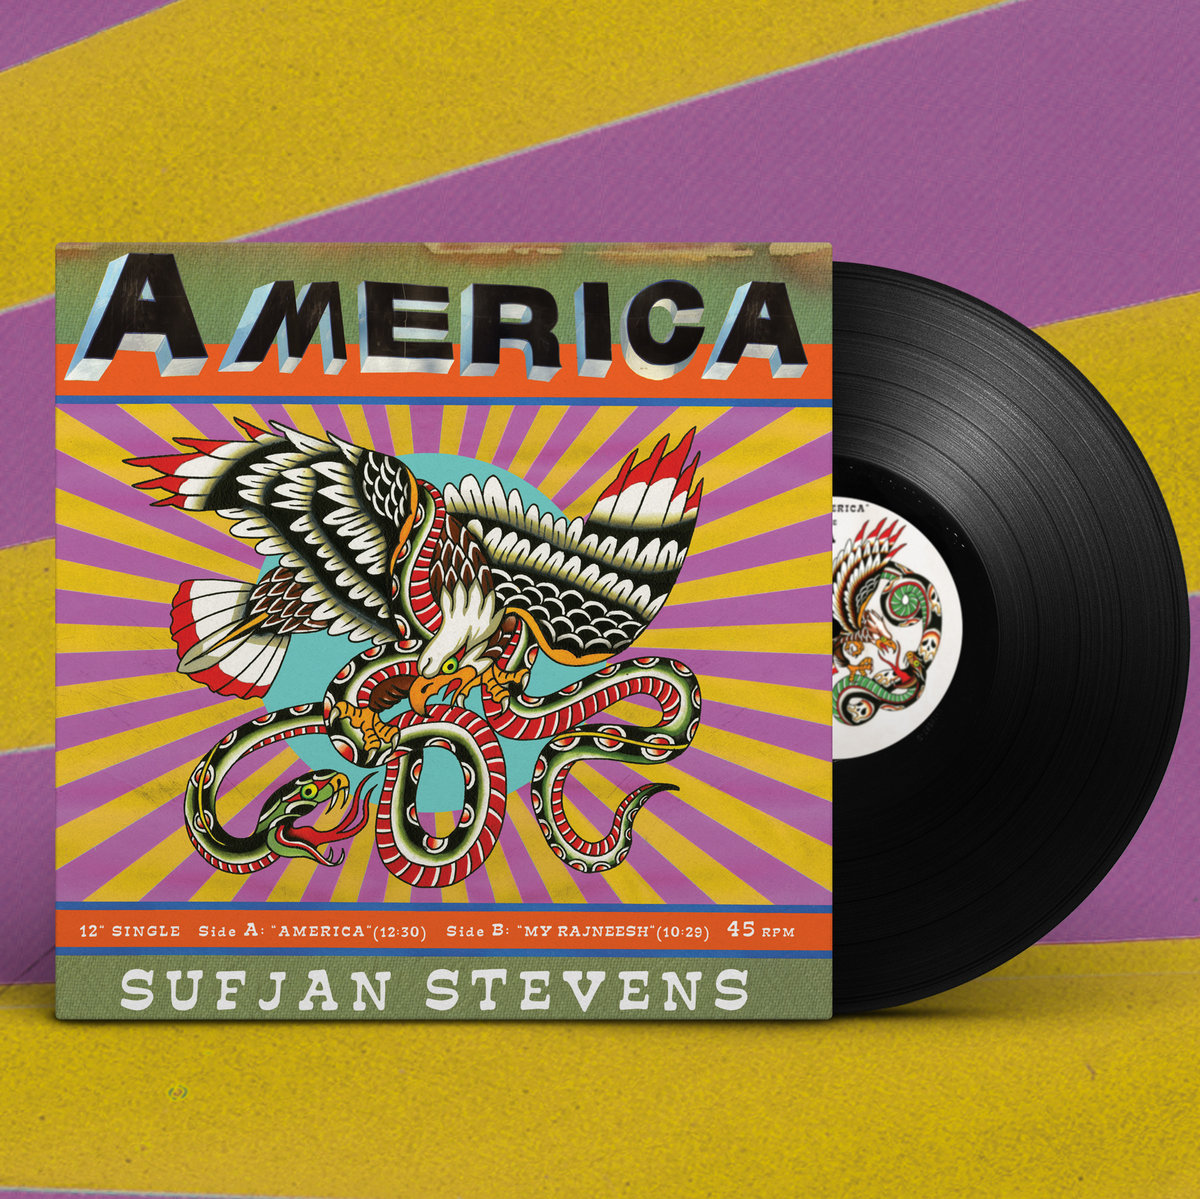 Sufjan Stevens - America2